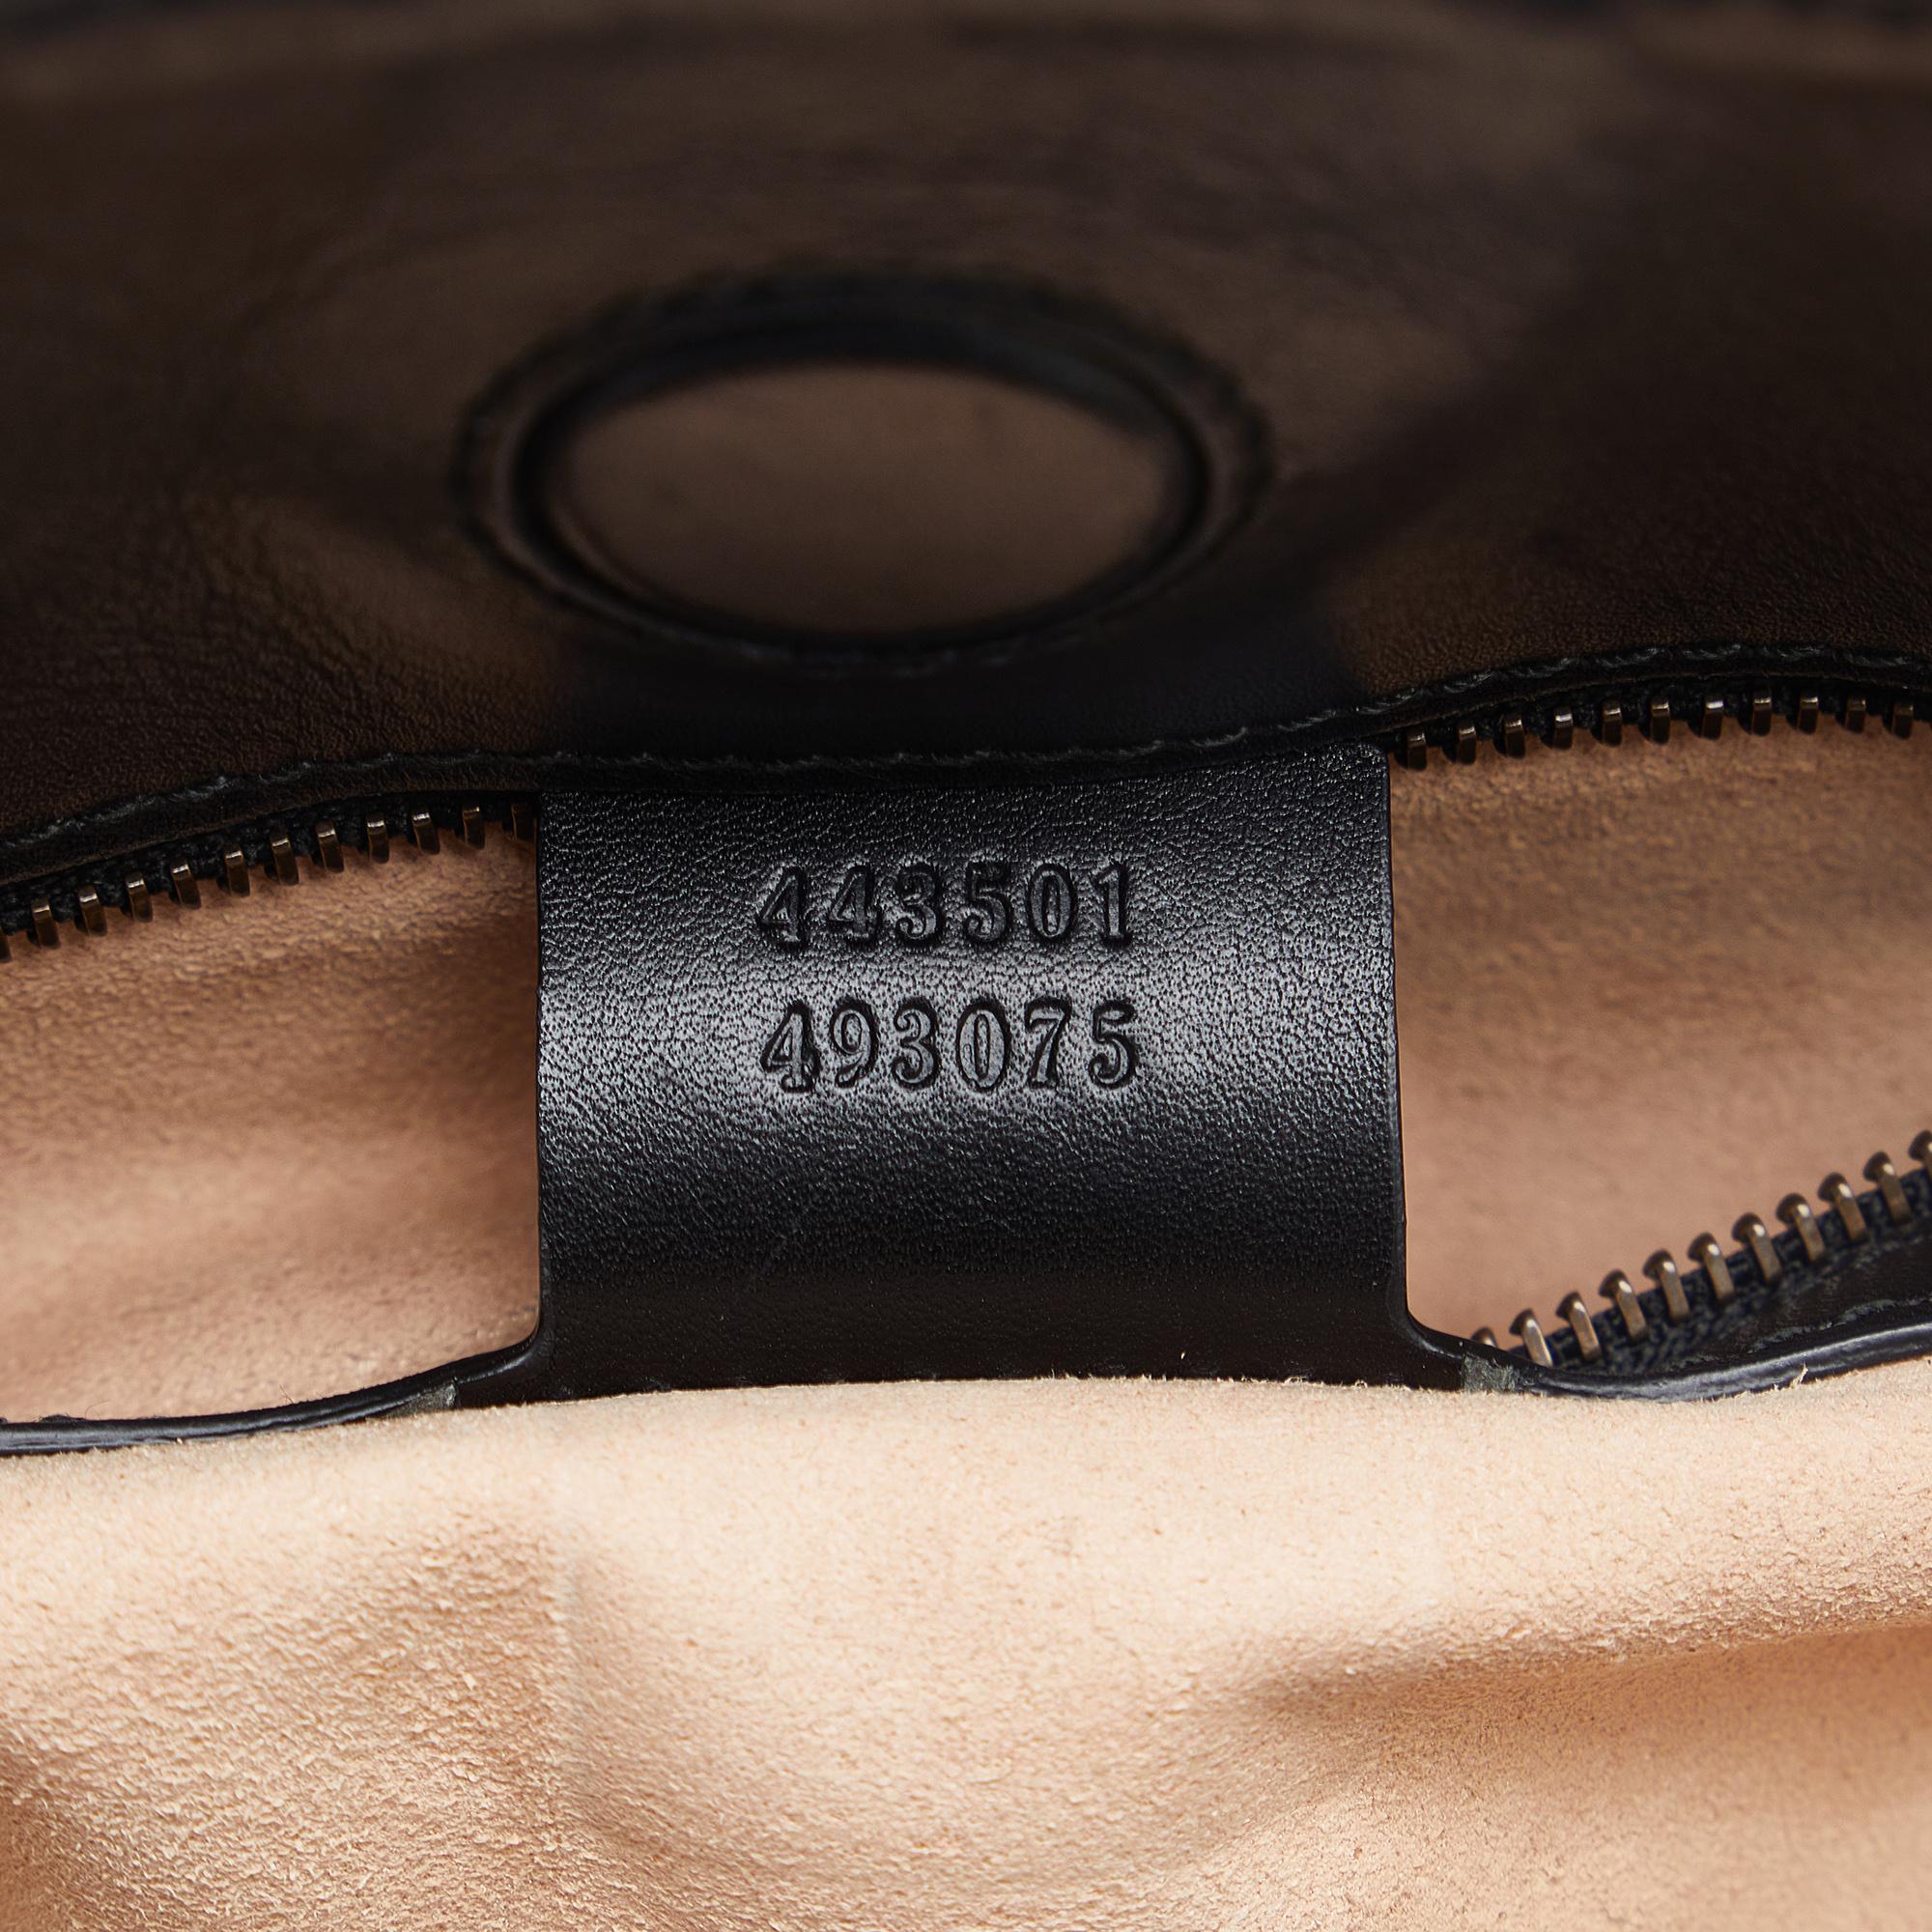 Gucci Black GG Marmont Matelasse Leather Shoulder Bag